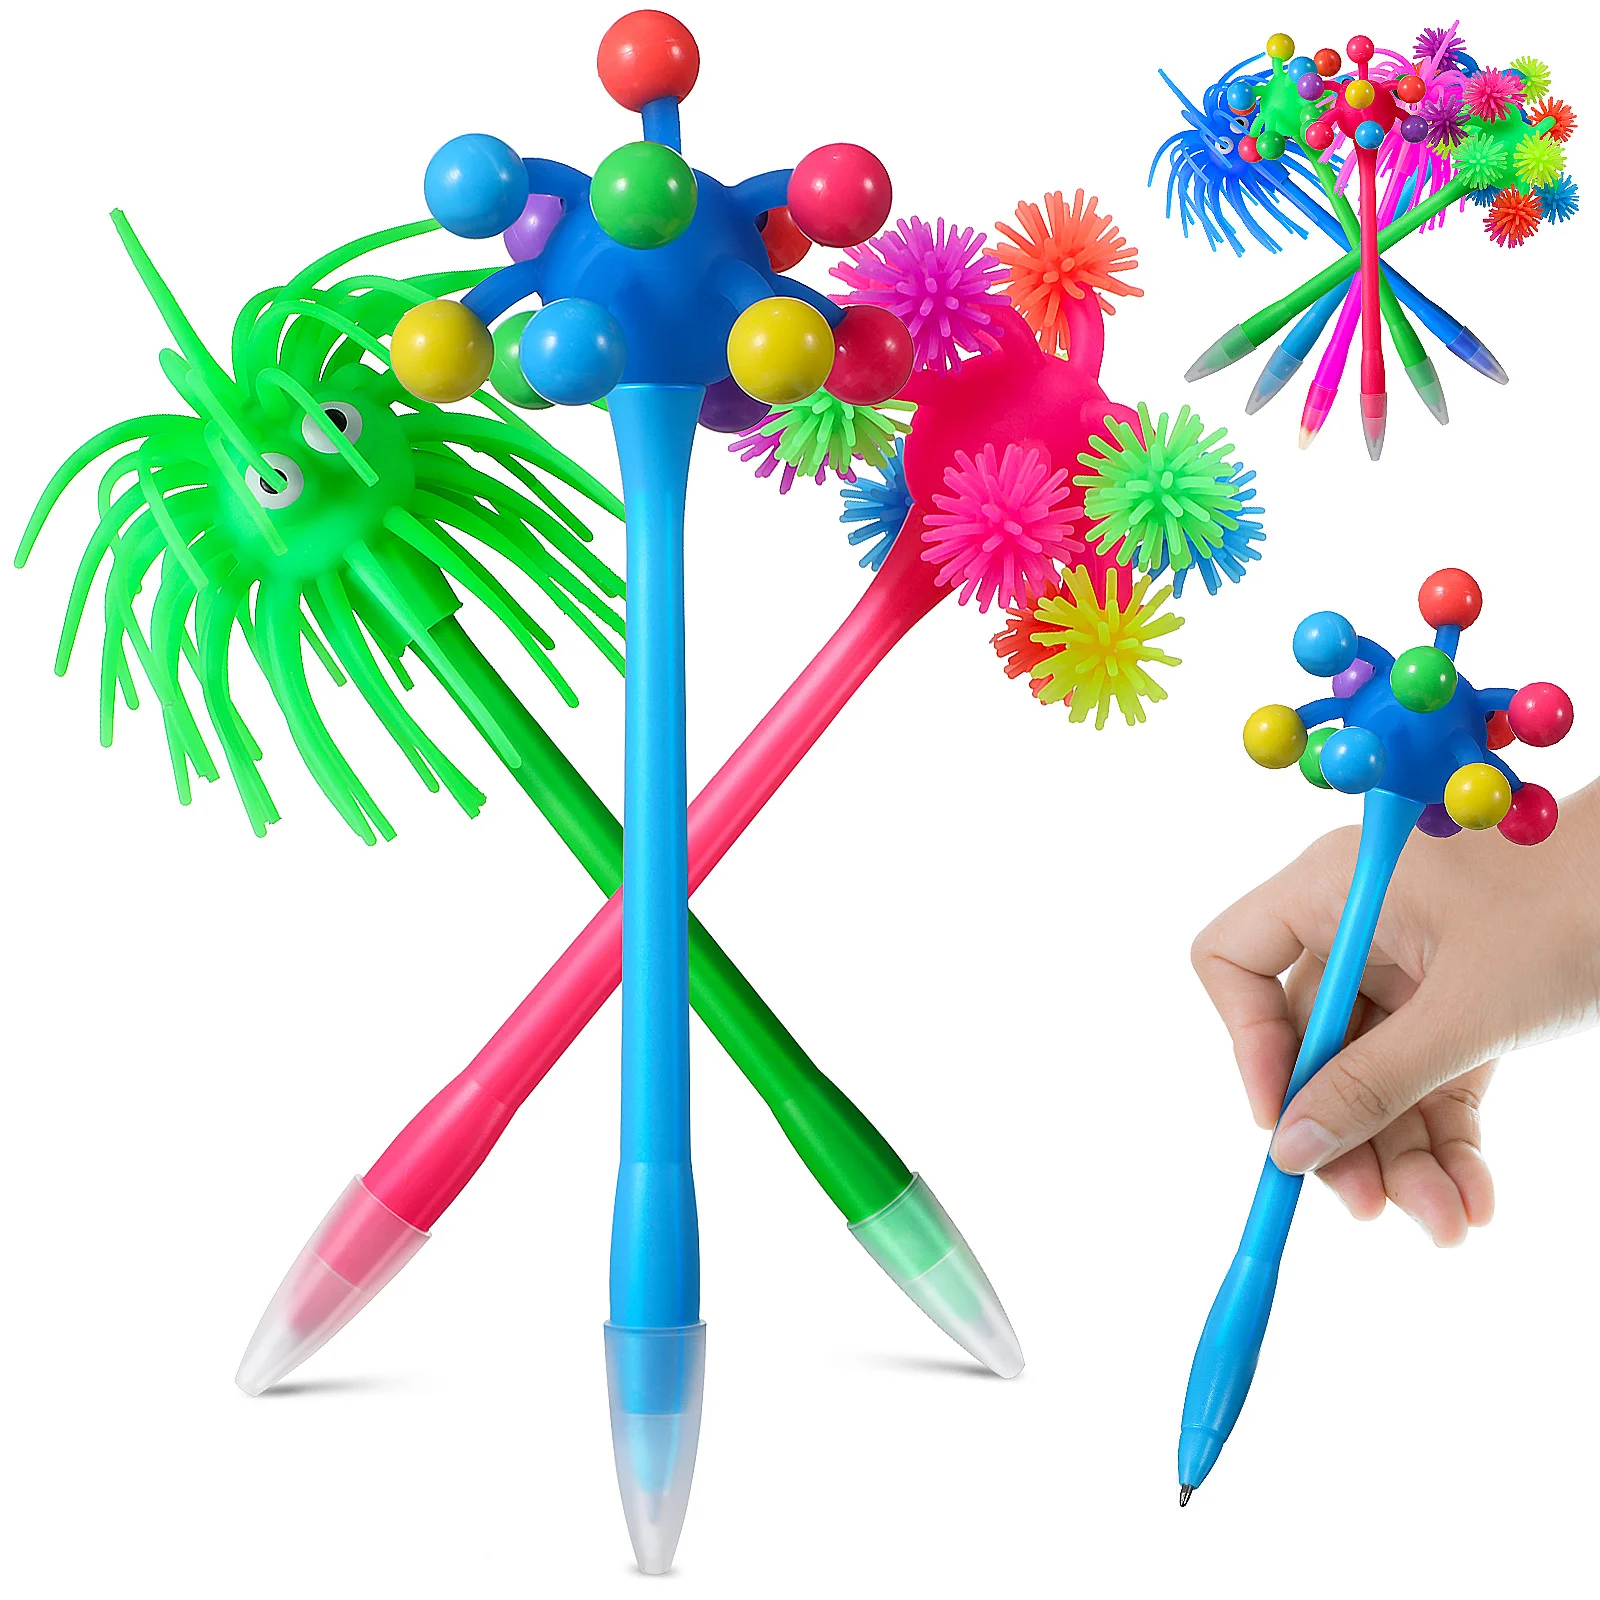 

Мультяшные шариковые ручки в форме морского урчина, мягкие резиновые забавные ручки-монстры, школьные и офисные канцелярские принадлежности